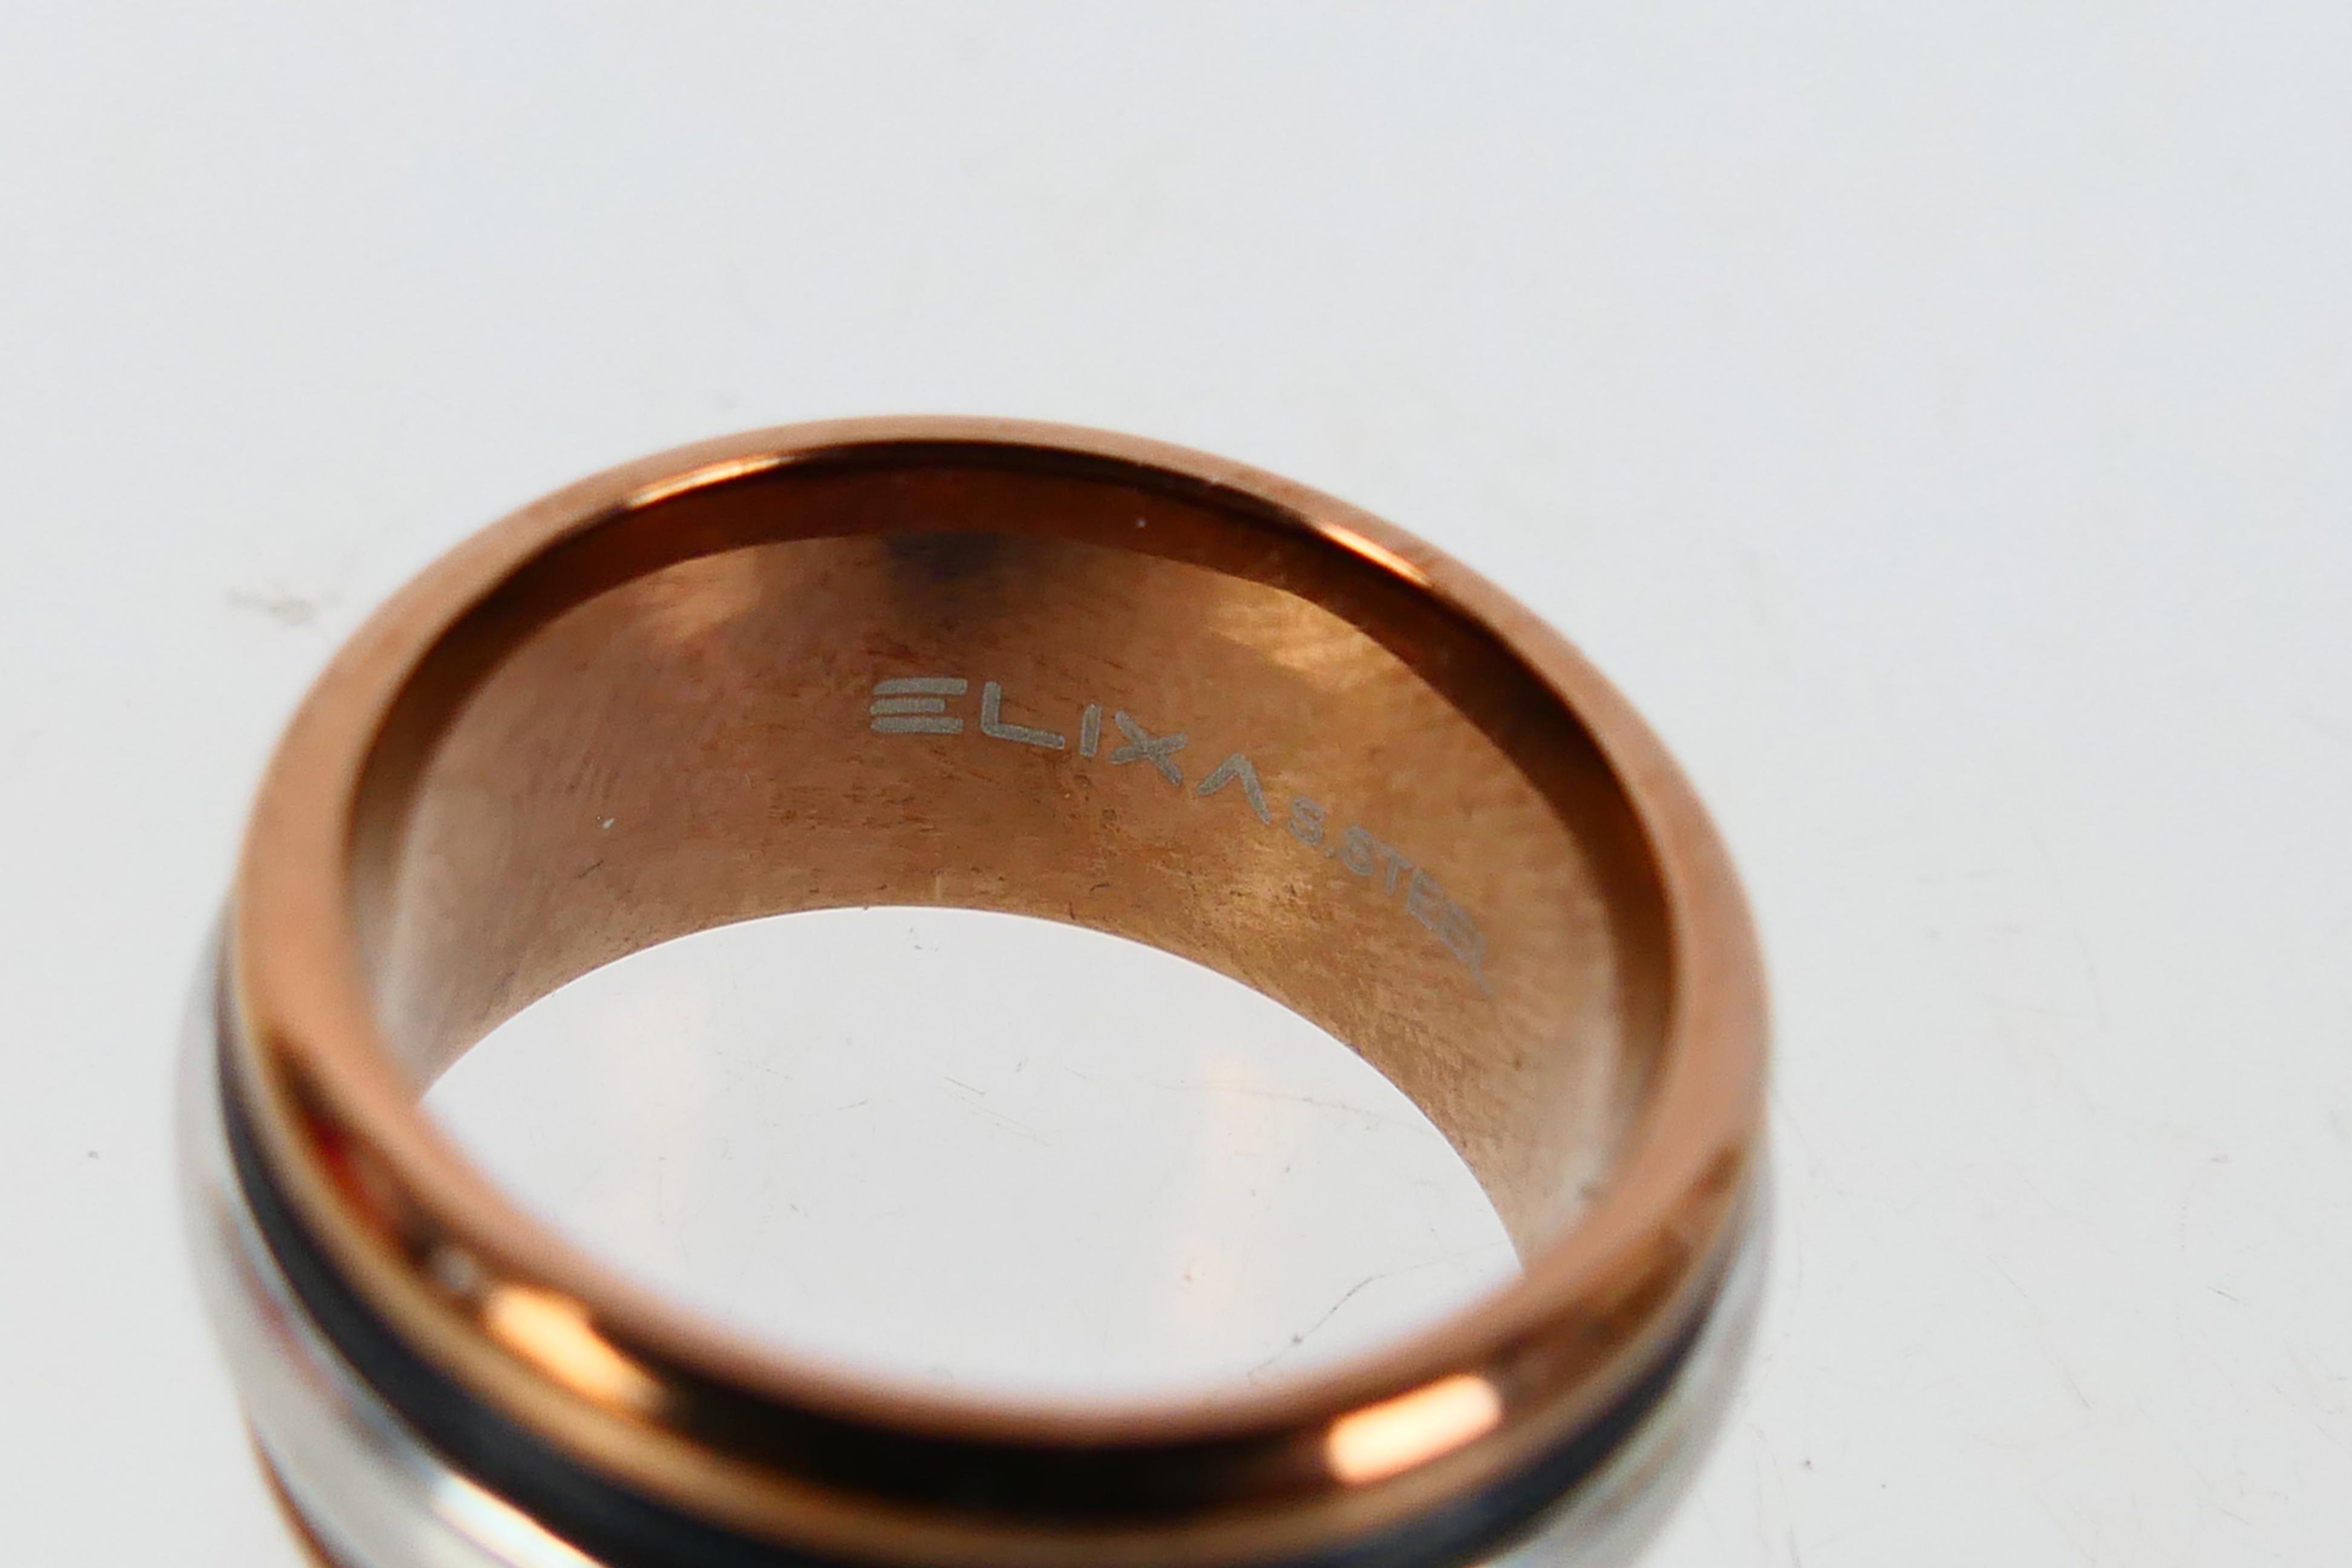 Swarovski, Elixa - A stainless steel Elixa rose gold coloured ring within a Swarovski box. - Image 3 of 4